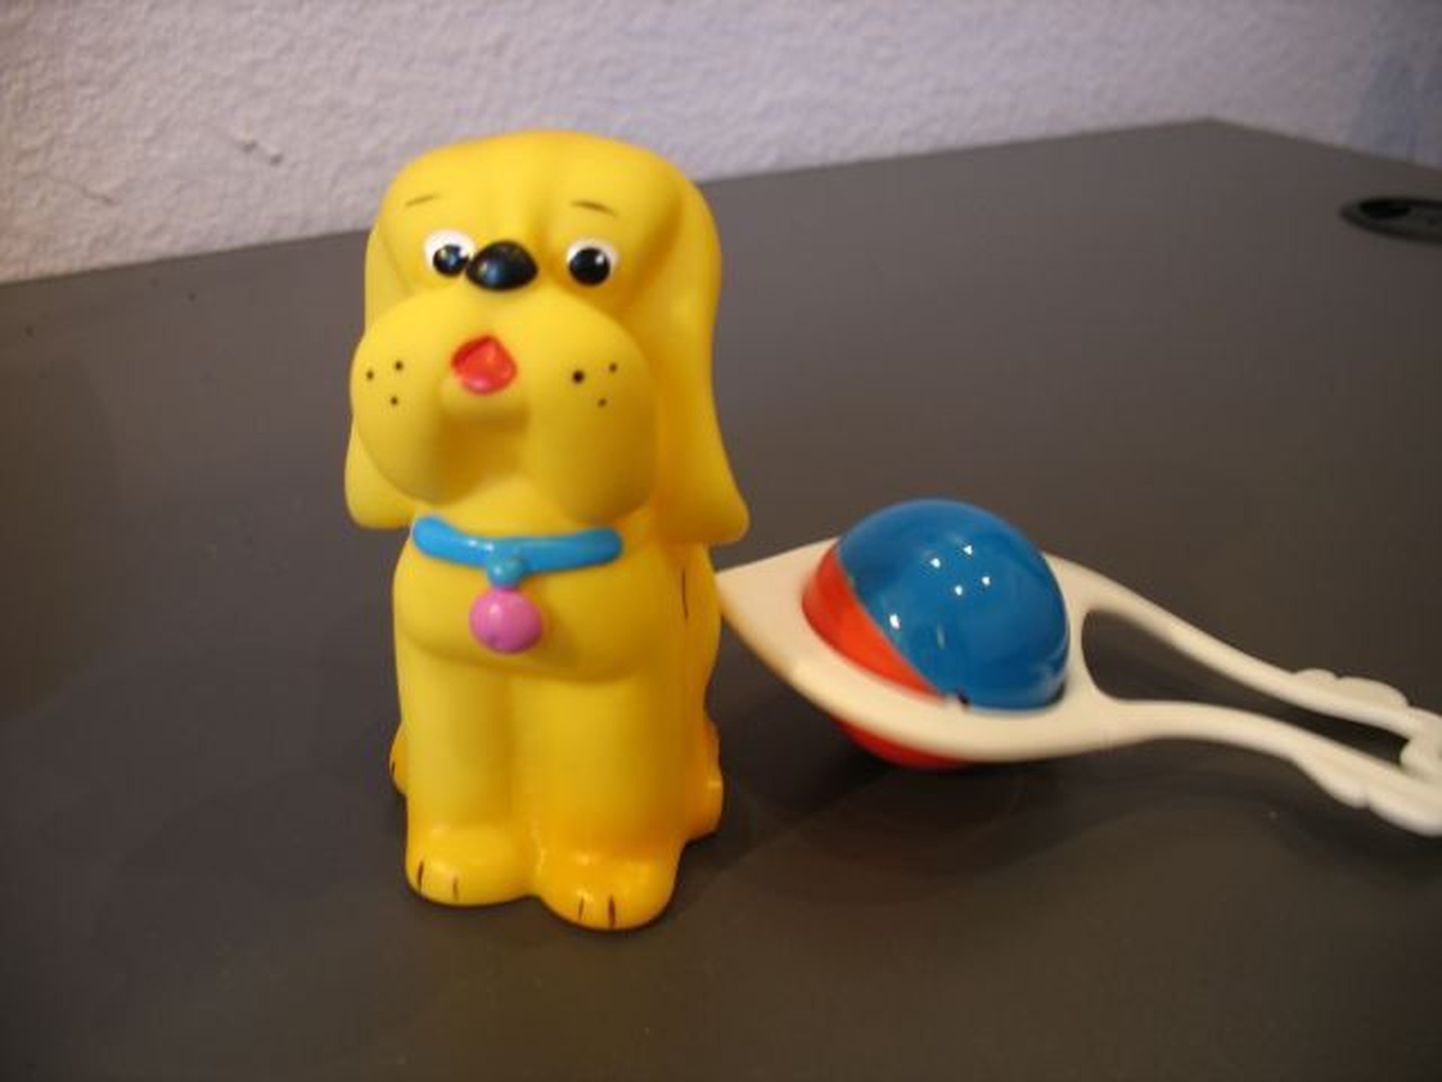 Tervisekaitse poolt müügilt kõrvaldatud tervisele ohtlikud mänguasjad. Pildil ftalaati sisaldanud koer ja kõristi.